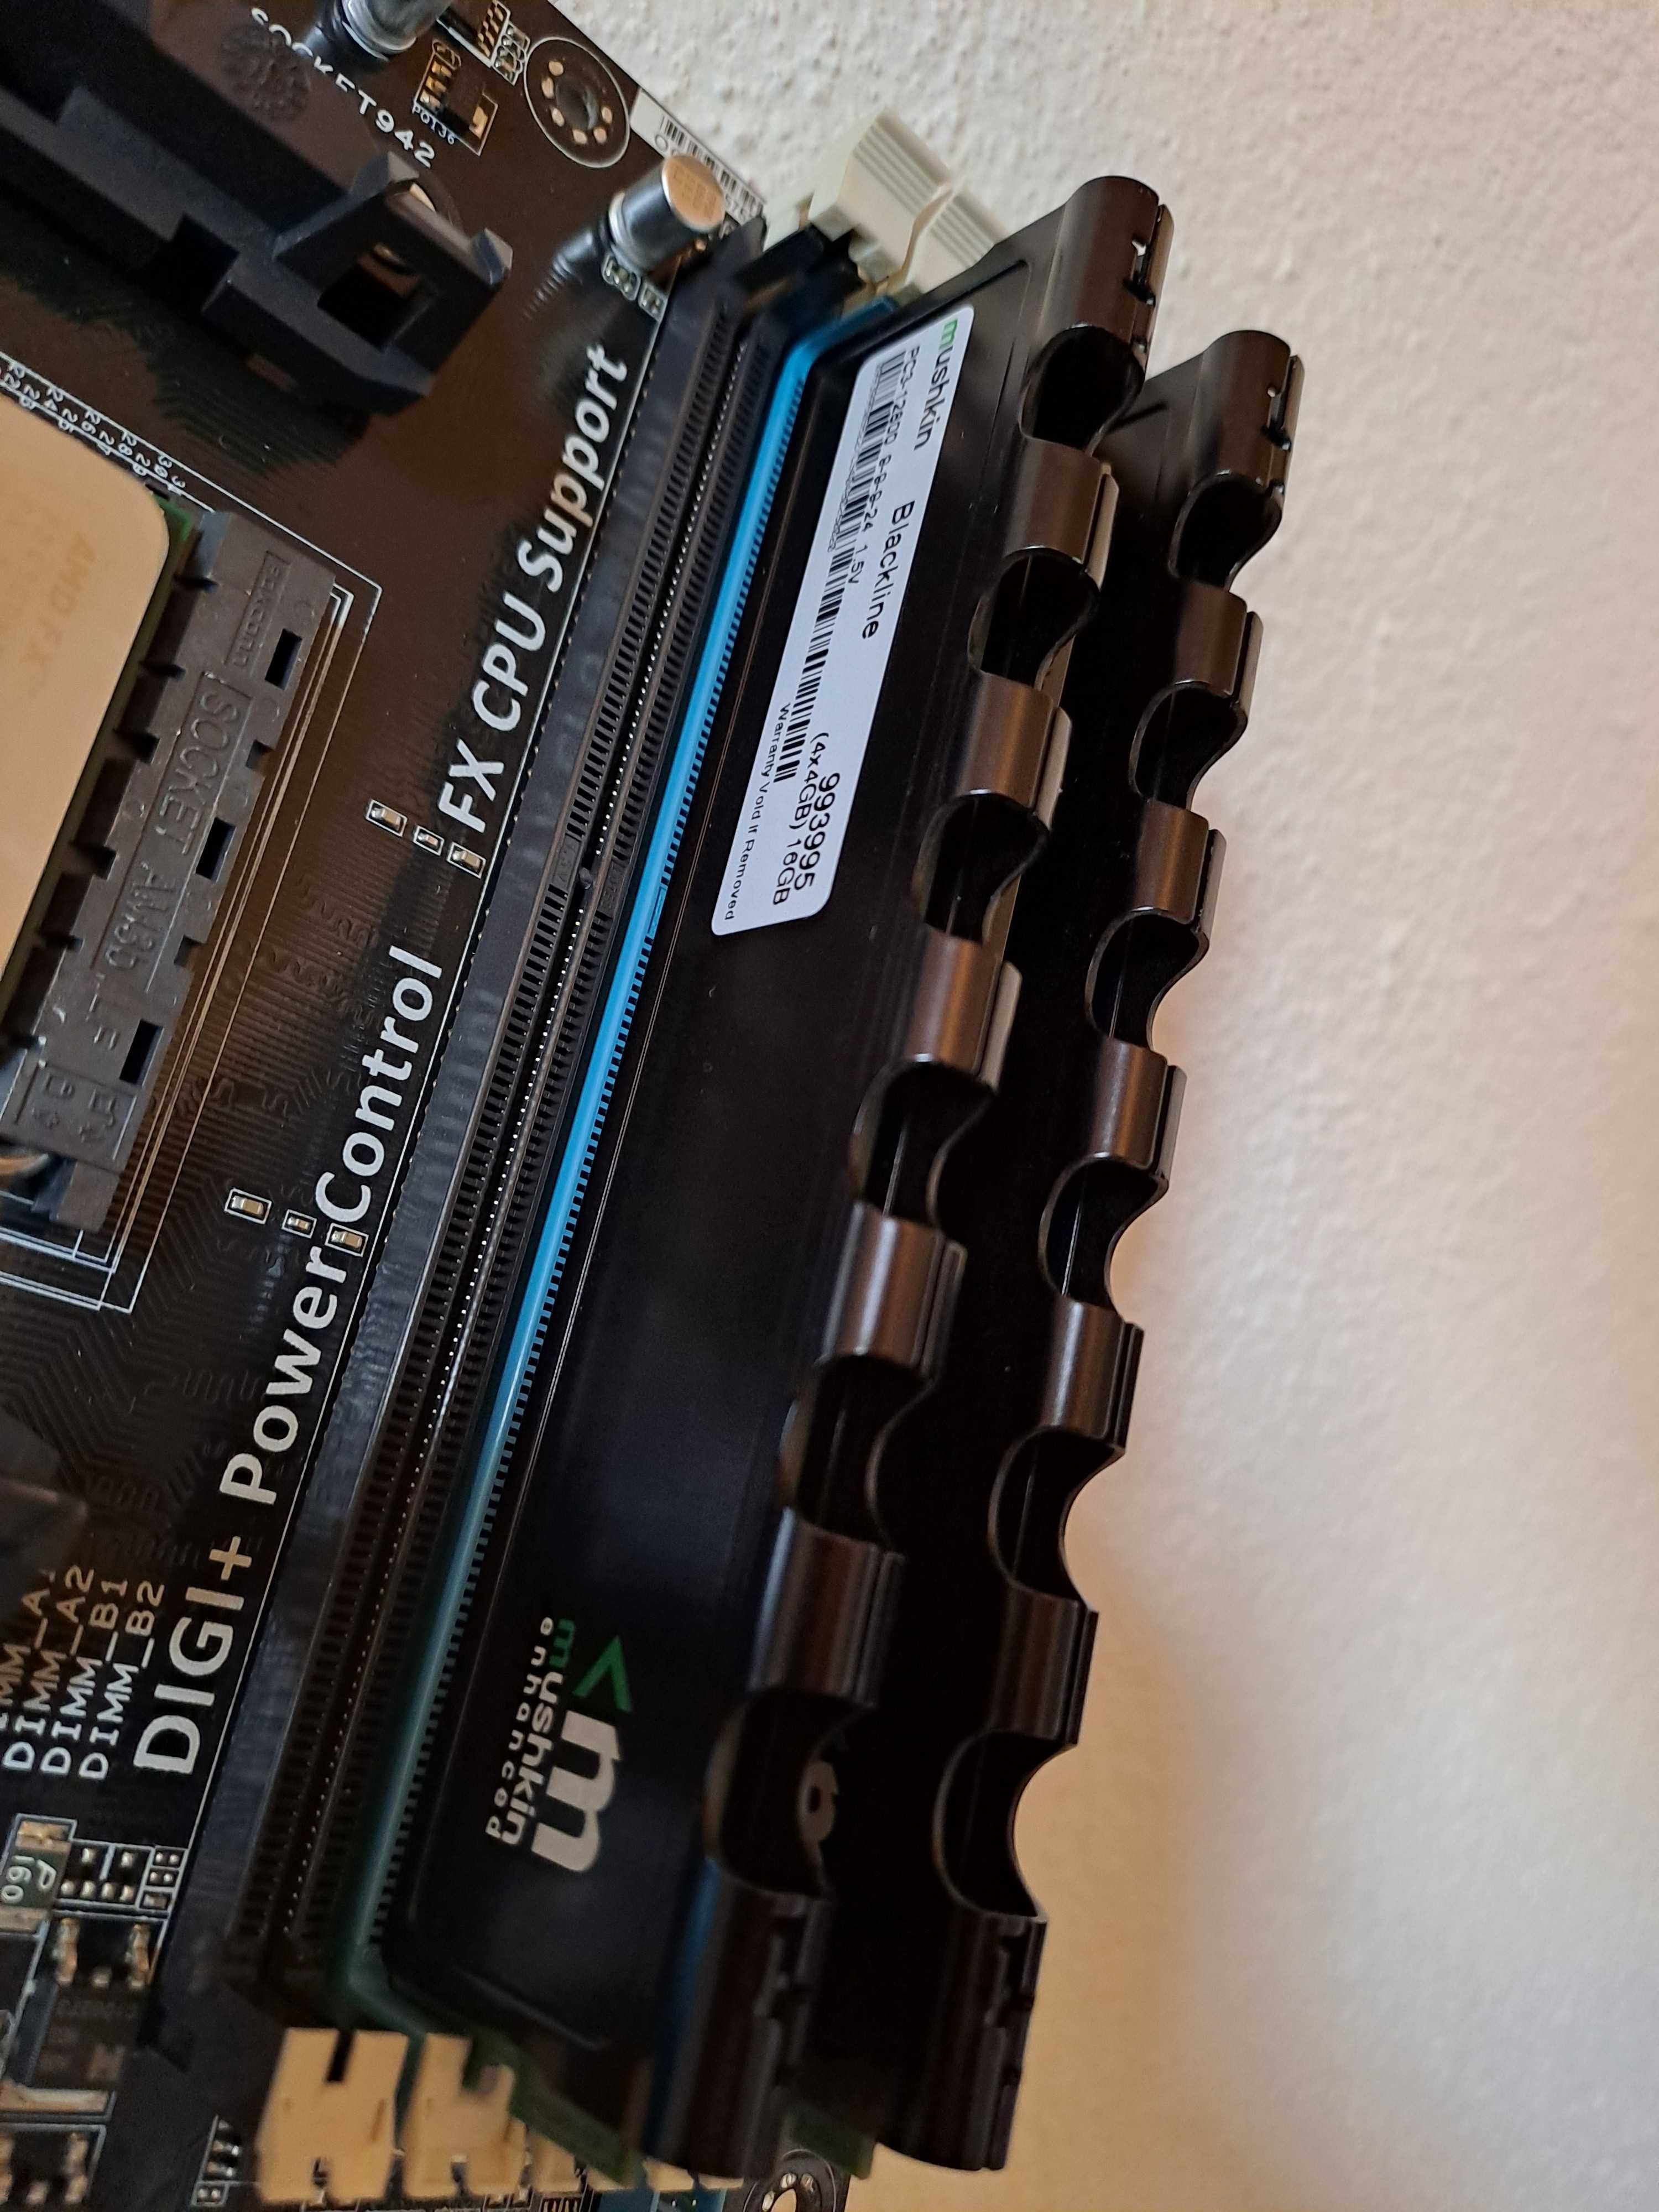 Bundle AMD FX-4300 / Board Asus M5A99X EVO R2.0 / 8GB DDR3 Mushkin